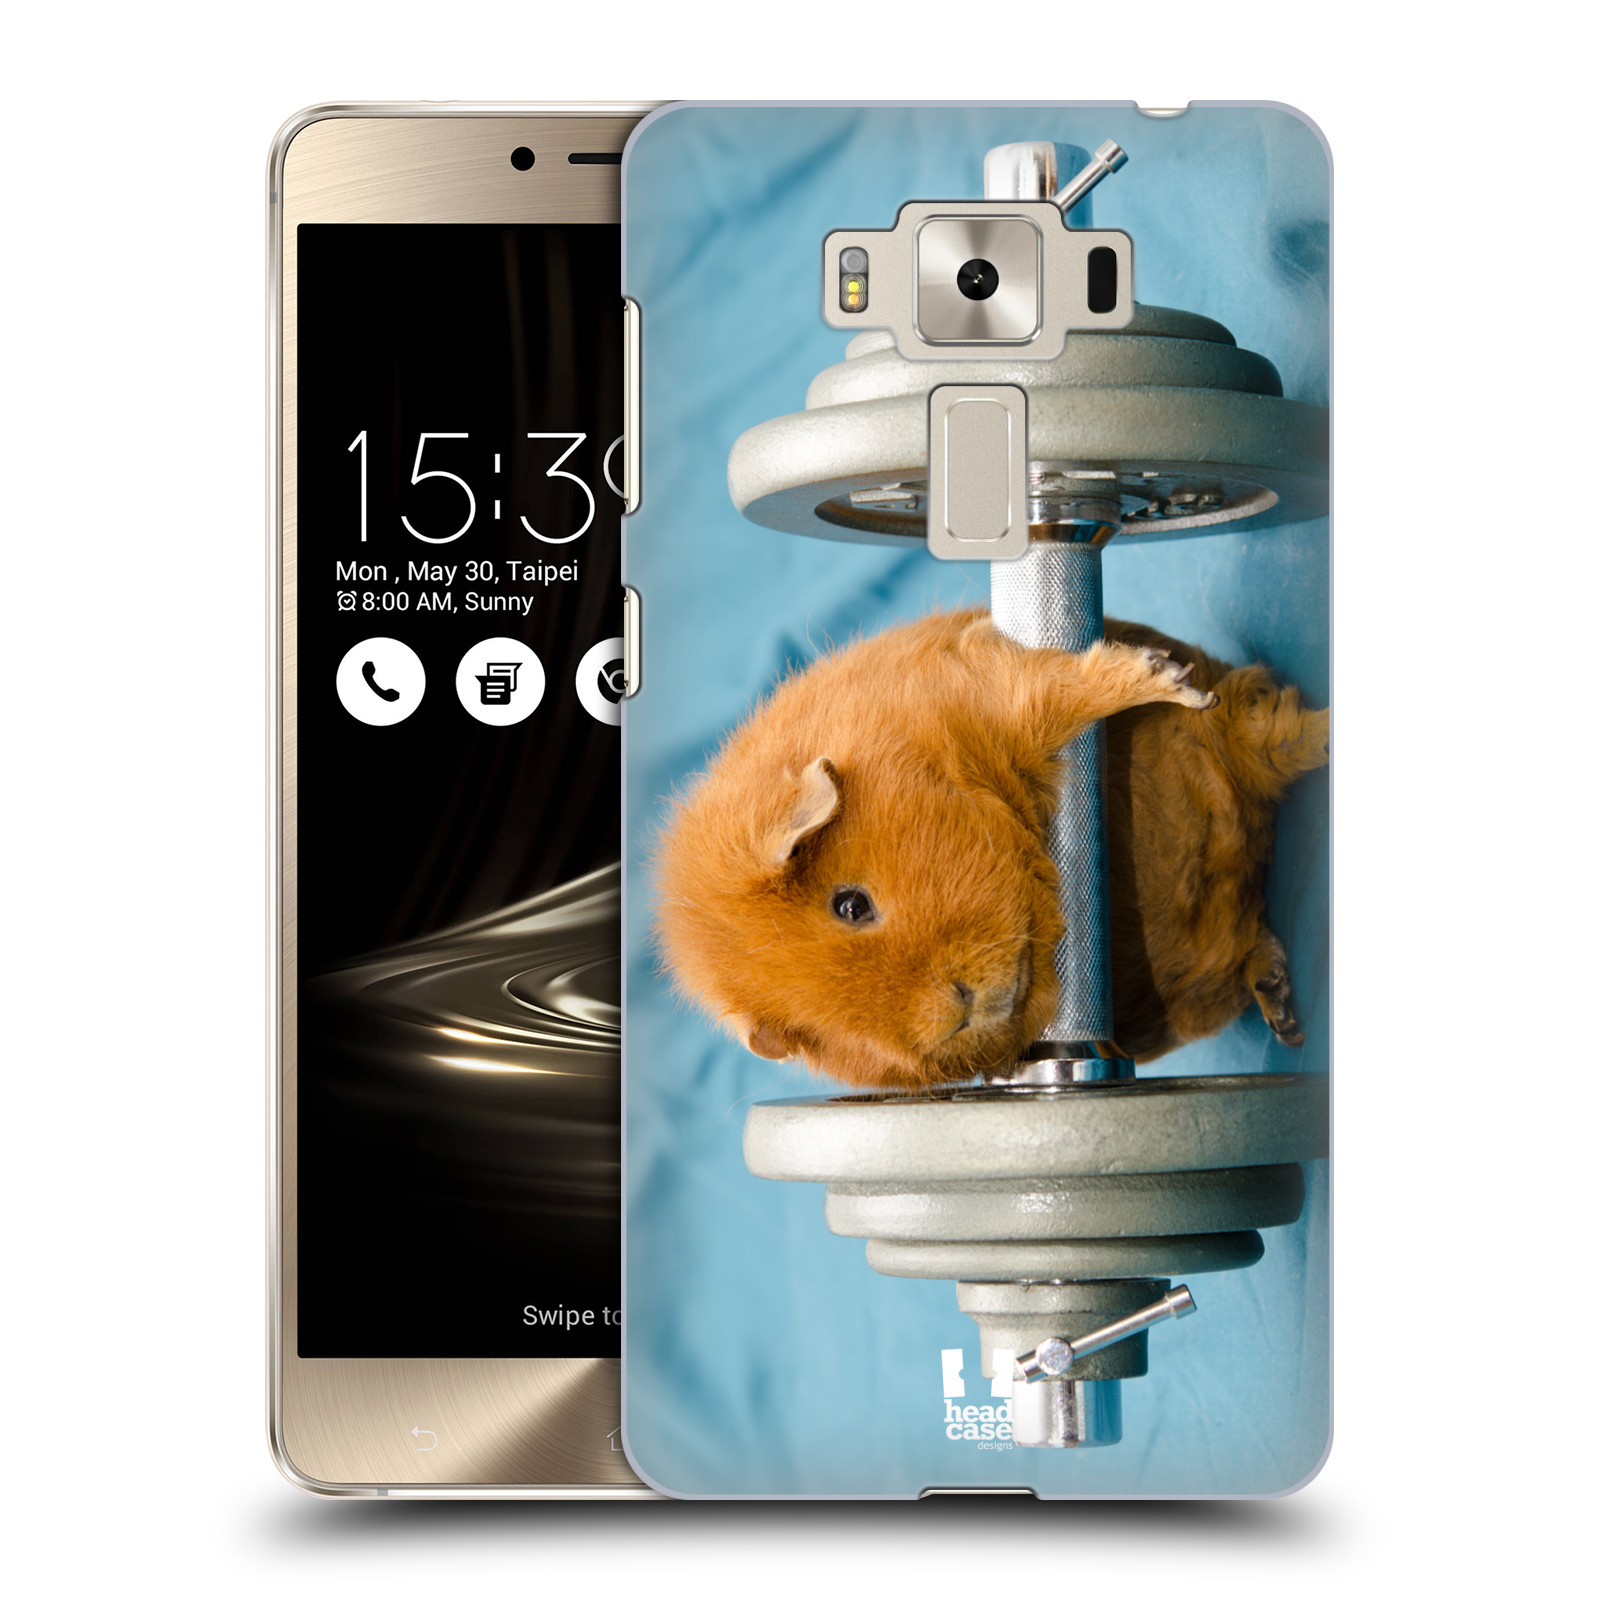 HEAD CASE plastový obal na mobil Asus Zenfone 3 DELUXE ZS550KL vzor Legrační zvířátka křeček/morče silák